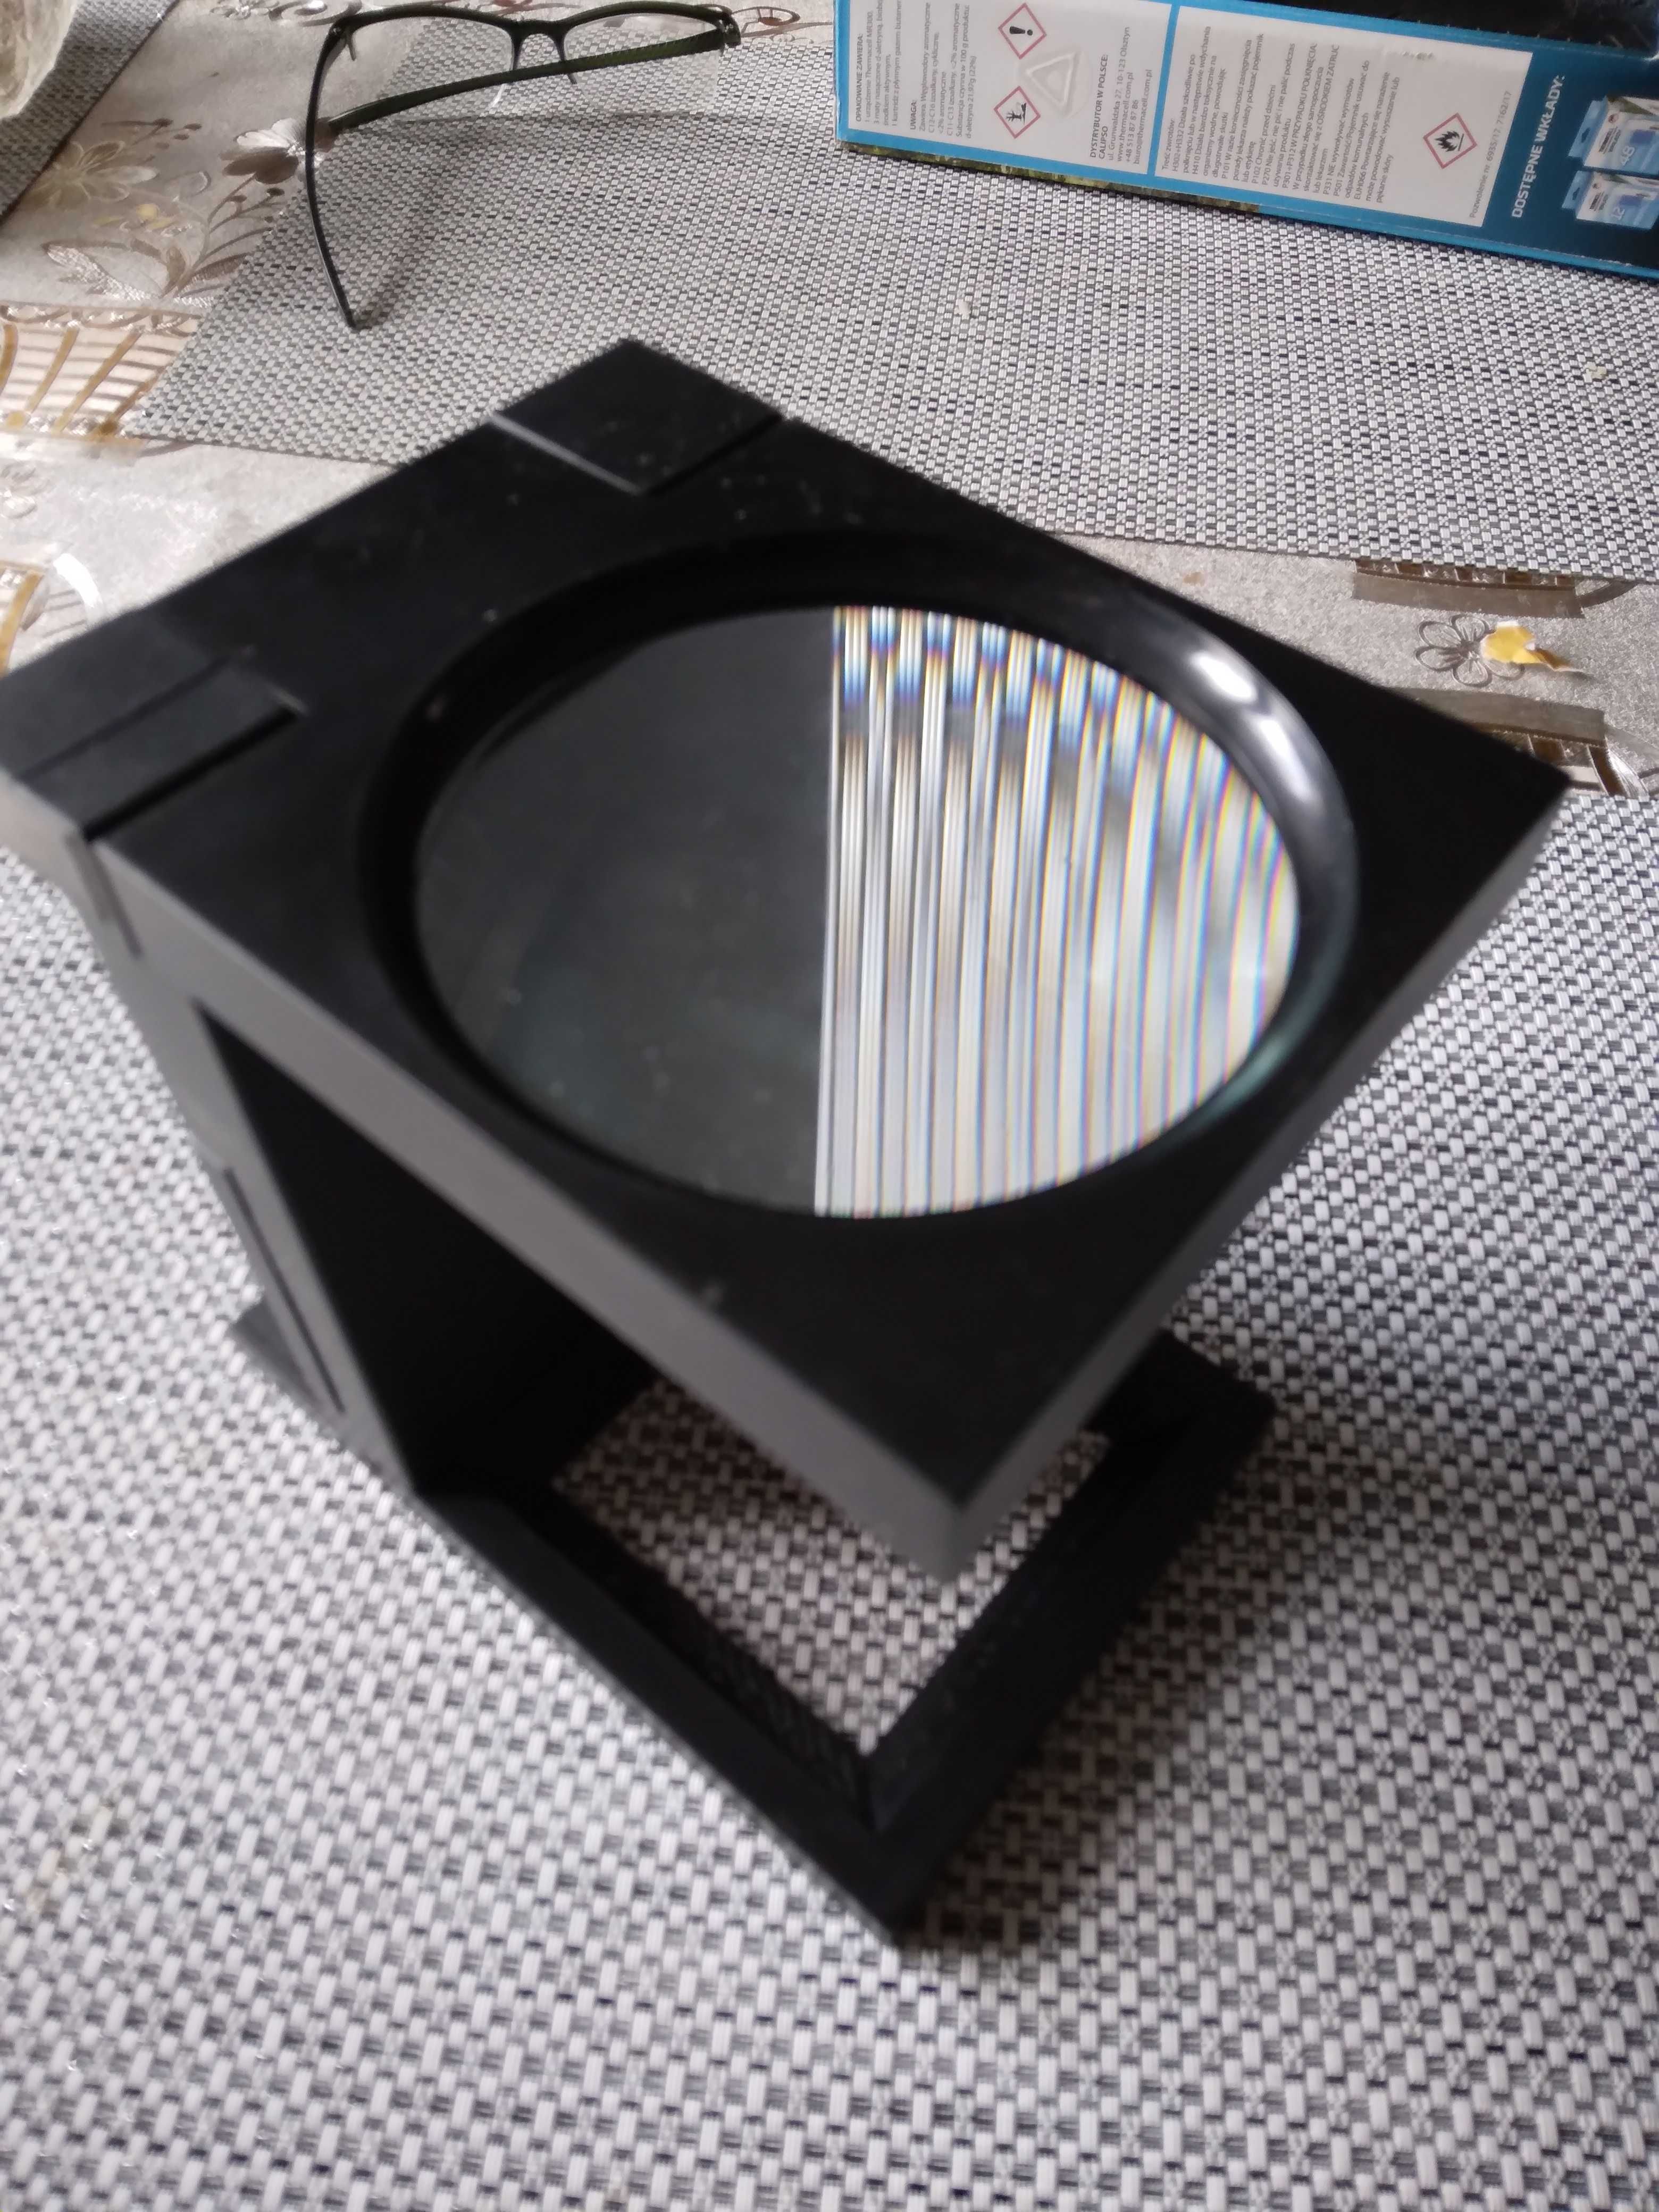 Sprzedam lupę Folding Magnifier with Light